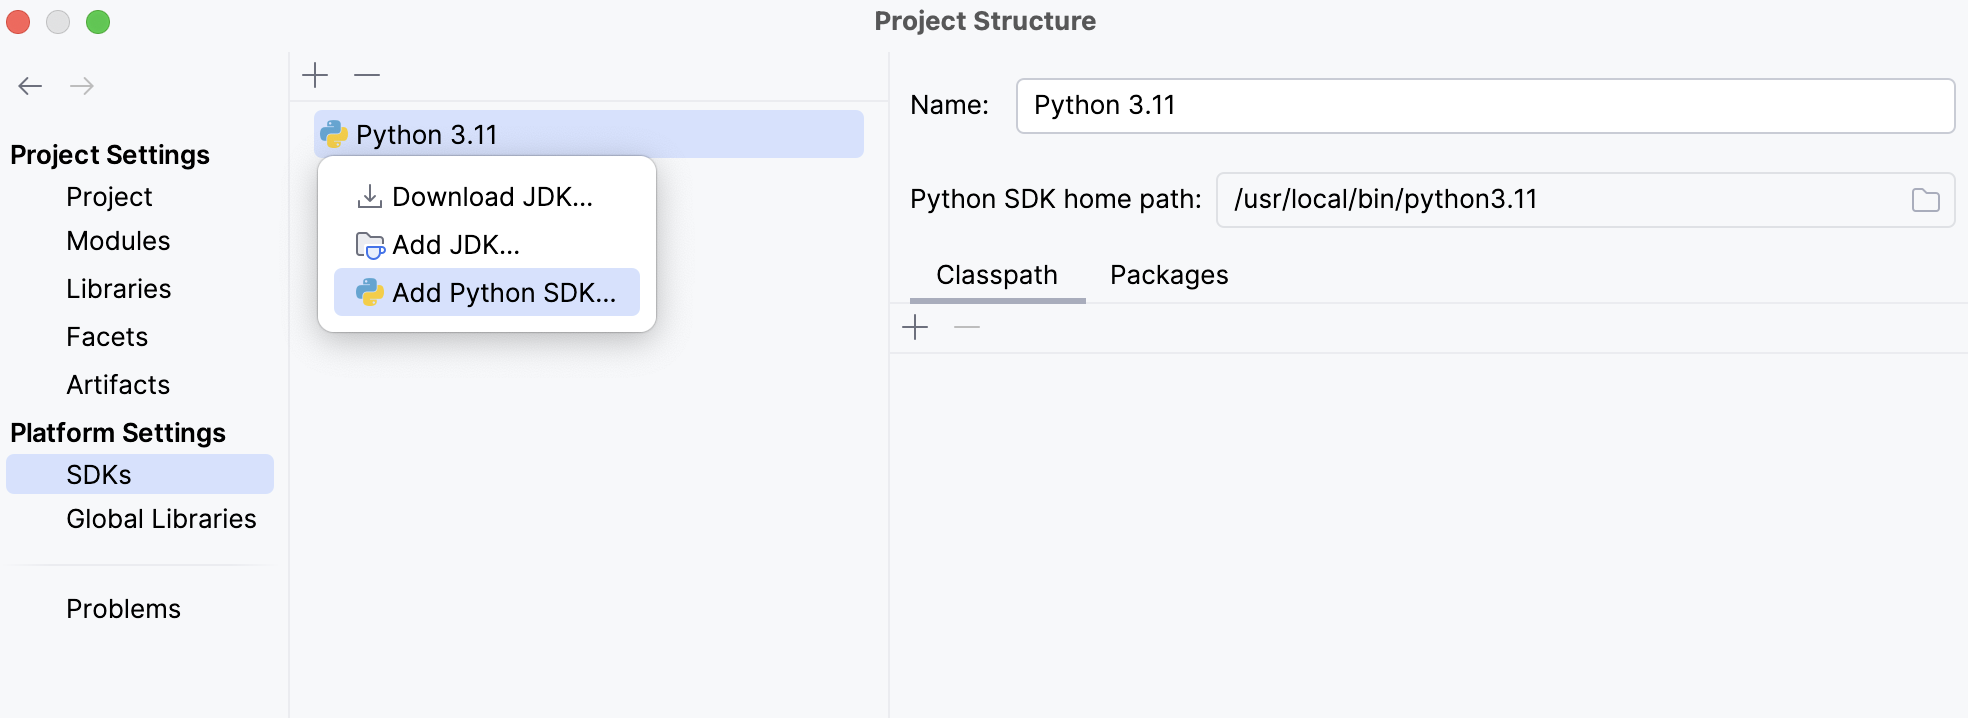 Adding a Python SDK